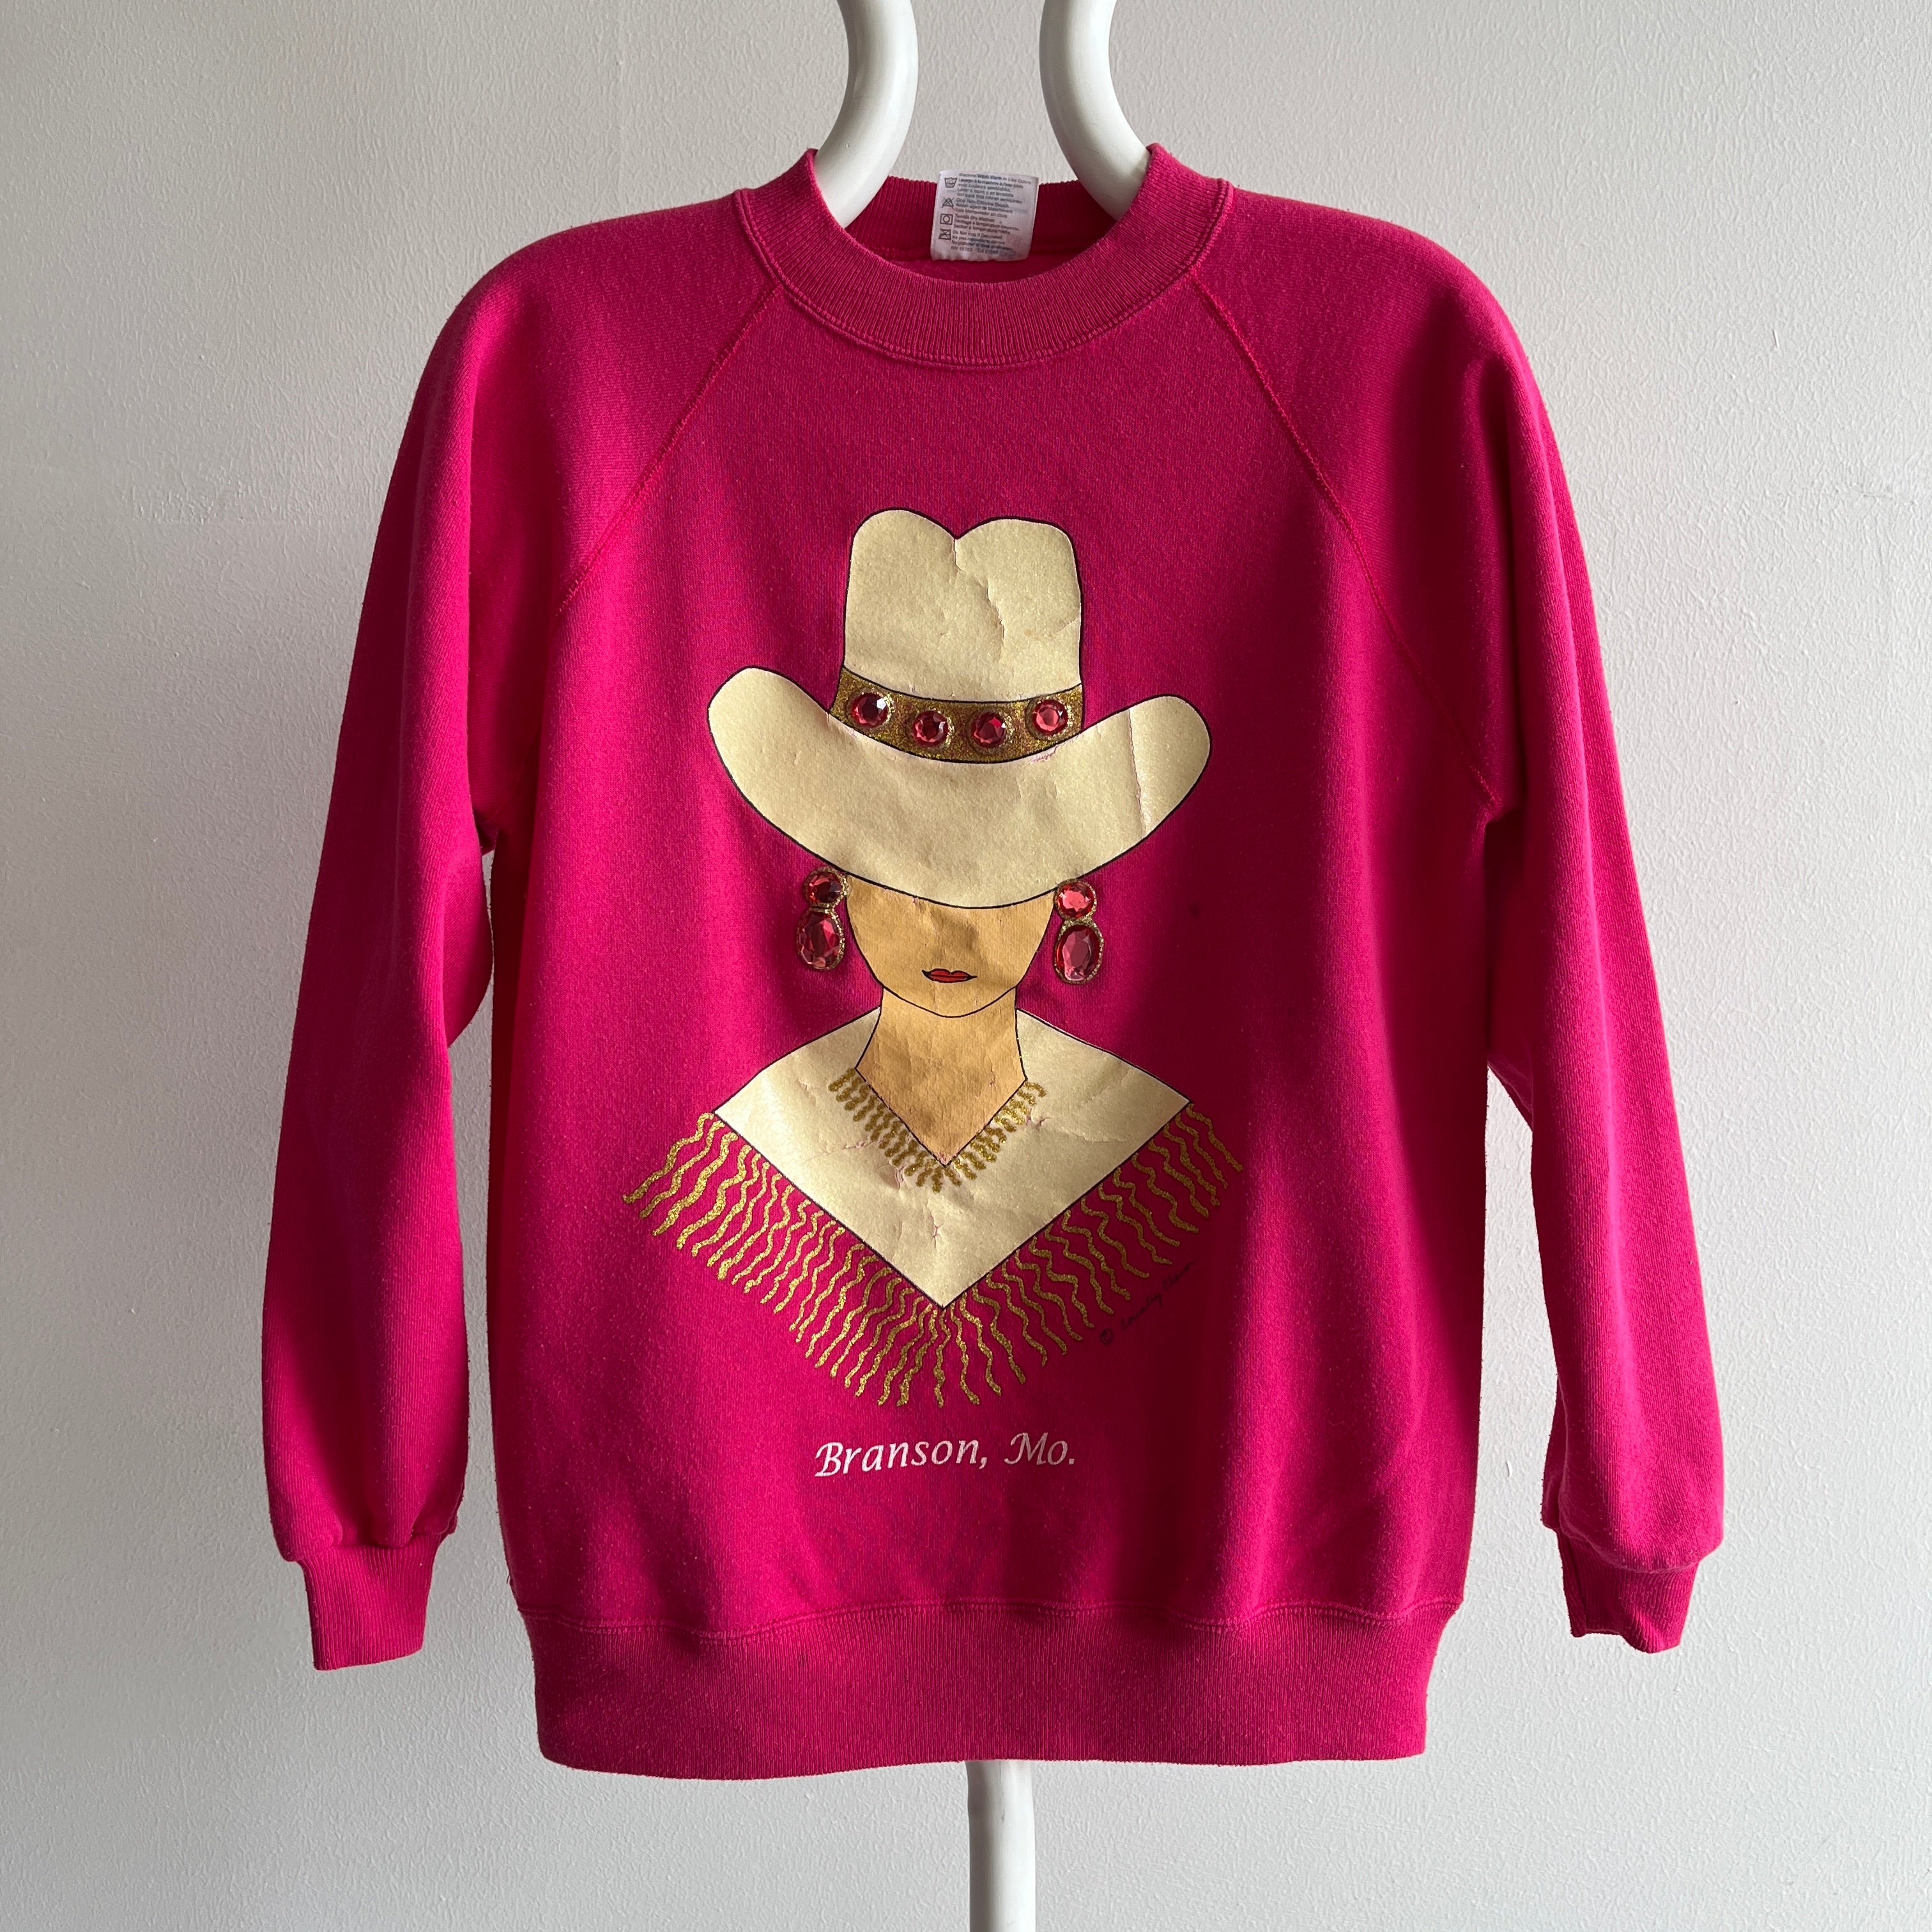 FAB-U-LOUS des années 1980 et Fancy Branson, Missouri Sweatshirt